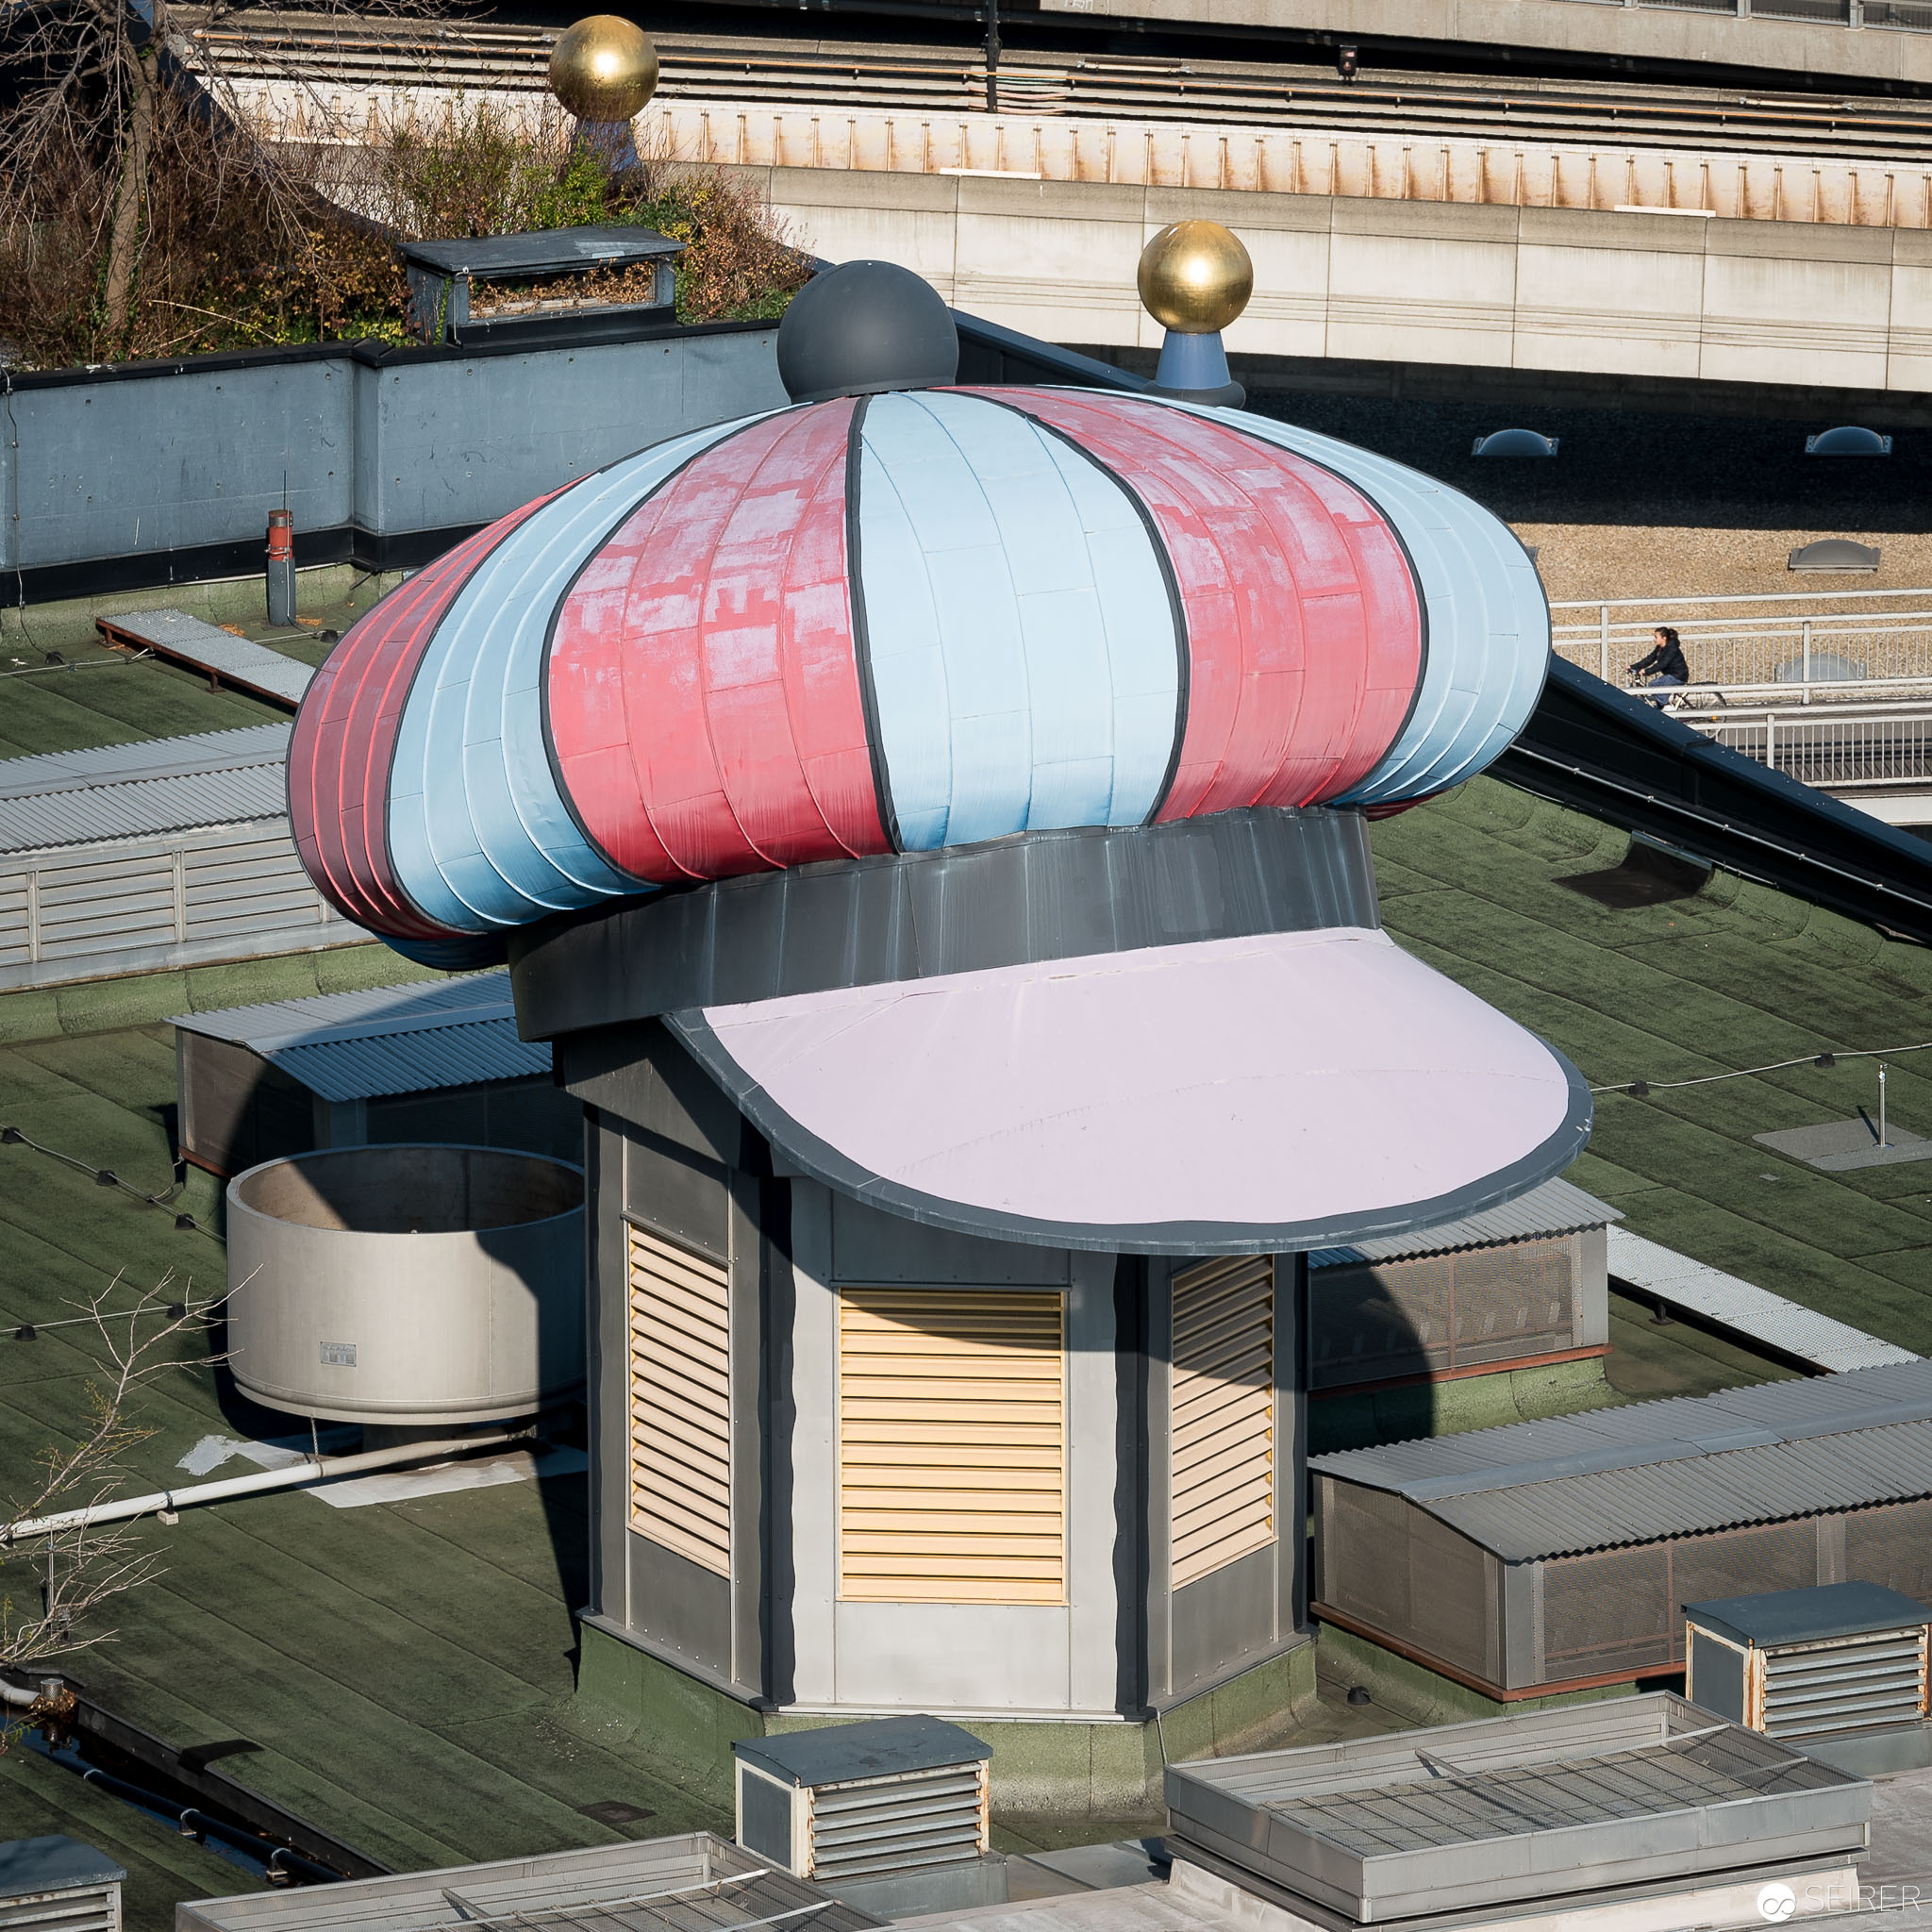 Hundertwasser Mütze über hässlichem Lüftungsausgang am Dach der Müllverbrennungsanlage Spittelau